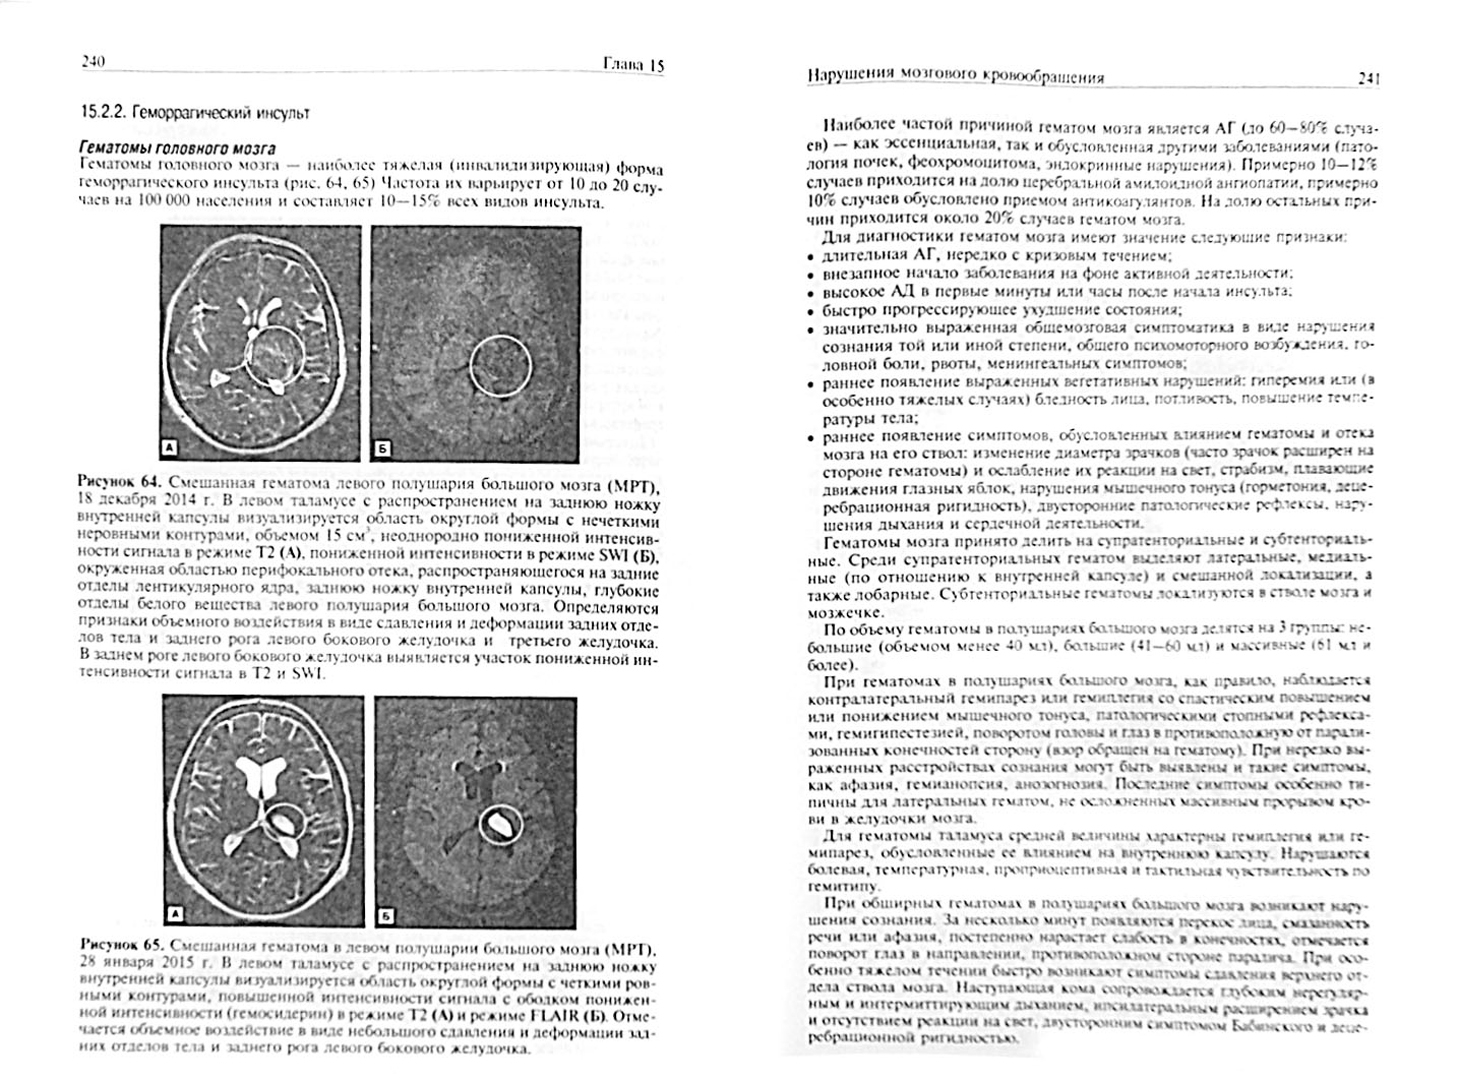 Иллюстрация 1 из 9 для Неврология. Учебник - Суслина, Максимова, Пирадов | Лабиринт - книги. Источник: Лабиринт